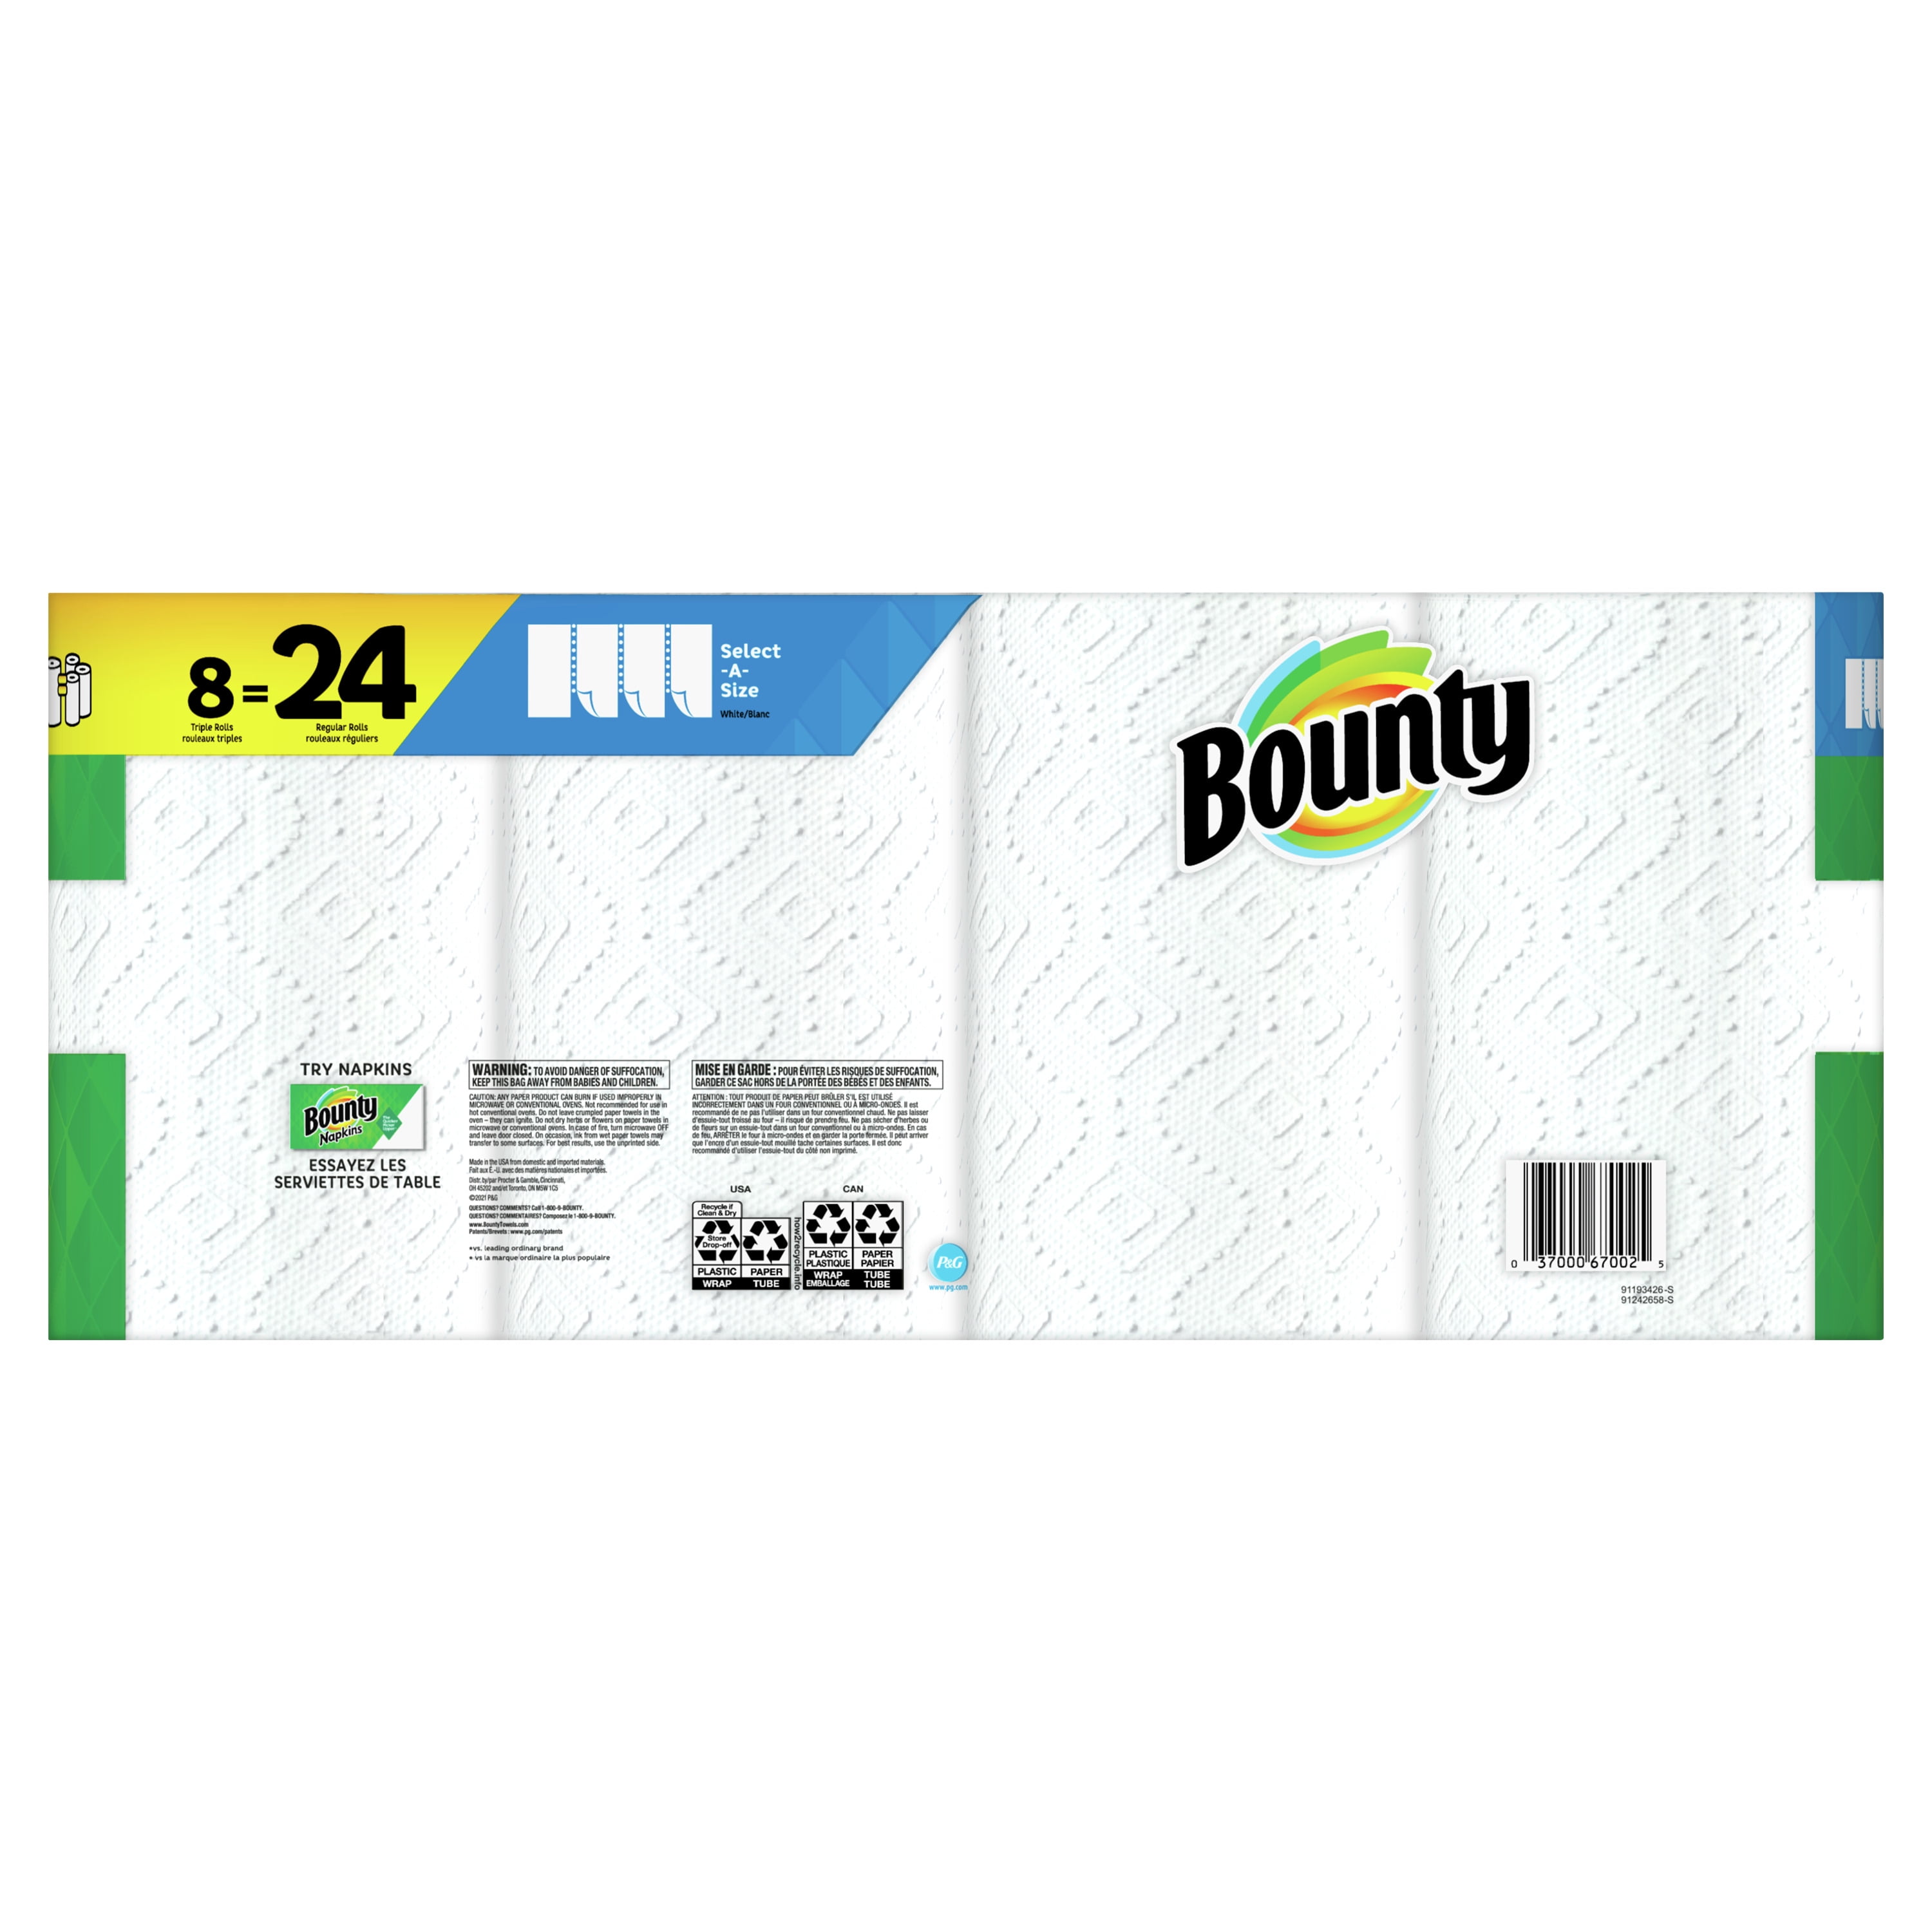 Bounty Select-A-Size Paper Towels Single Plus Rolls, 8 rolls - Harris Teeter